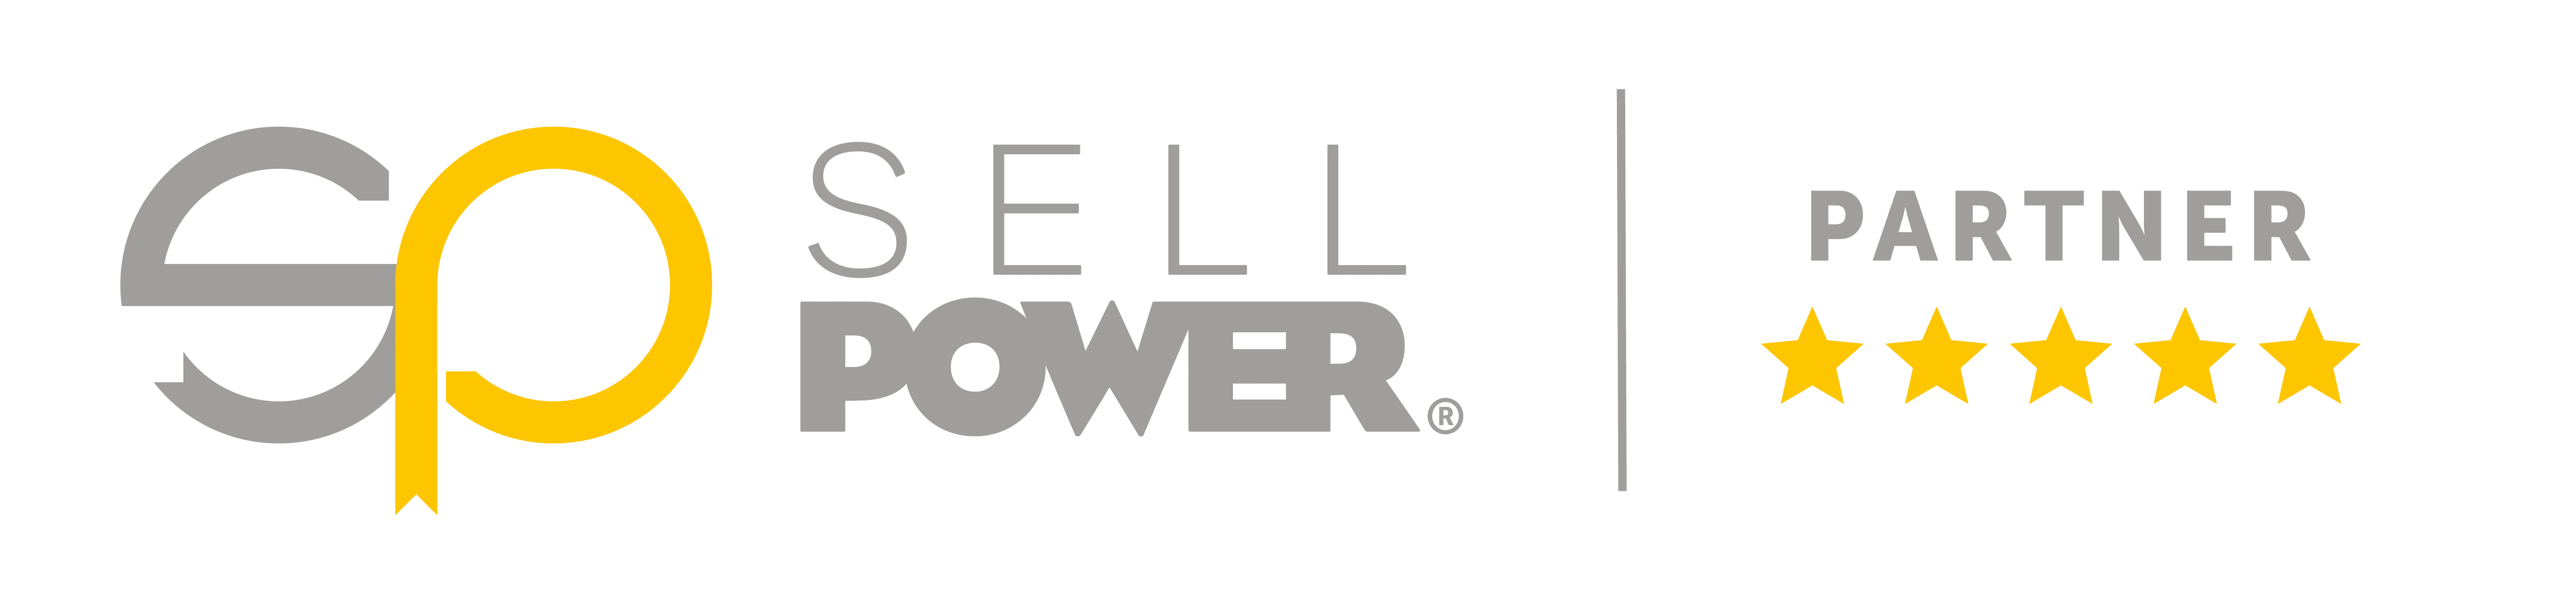 Sell Power Partner-logotyp: En snygg och professionell logotyp som representerar en pålitlig partner inom kraftindustrin